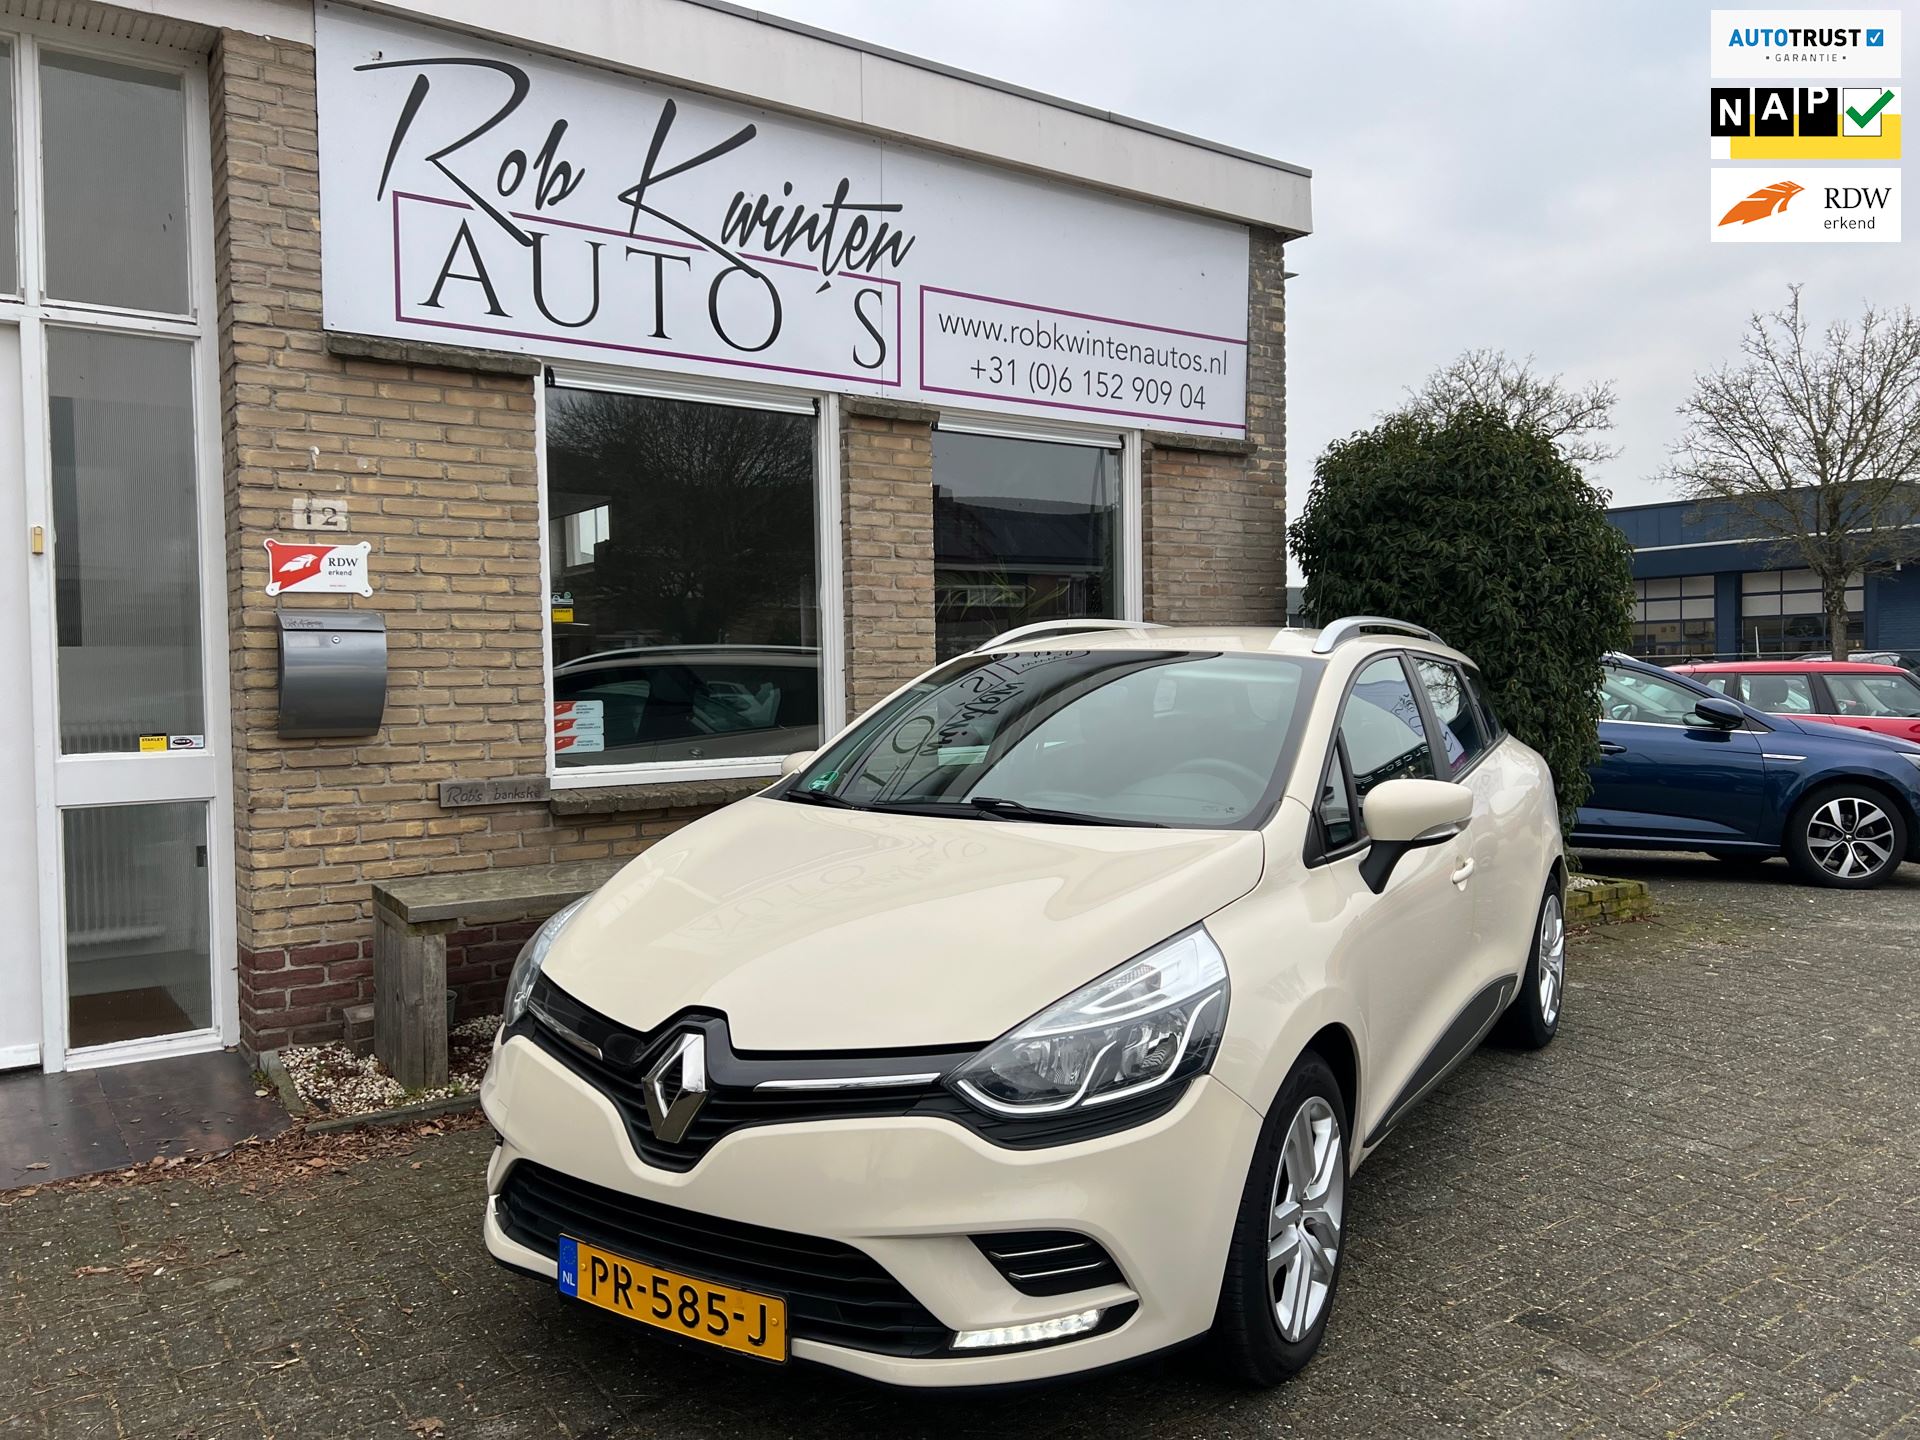 niet voldoende ontwerp Kosciuszko Renault Clio Estate - 0.9 TCe Zen Navigatie / Airconditioning Benzine uit  2017 - www.robkwintenautos.nl